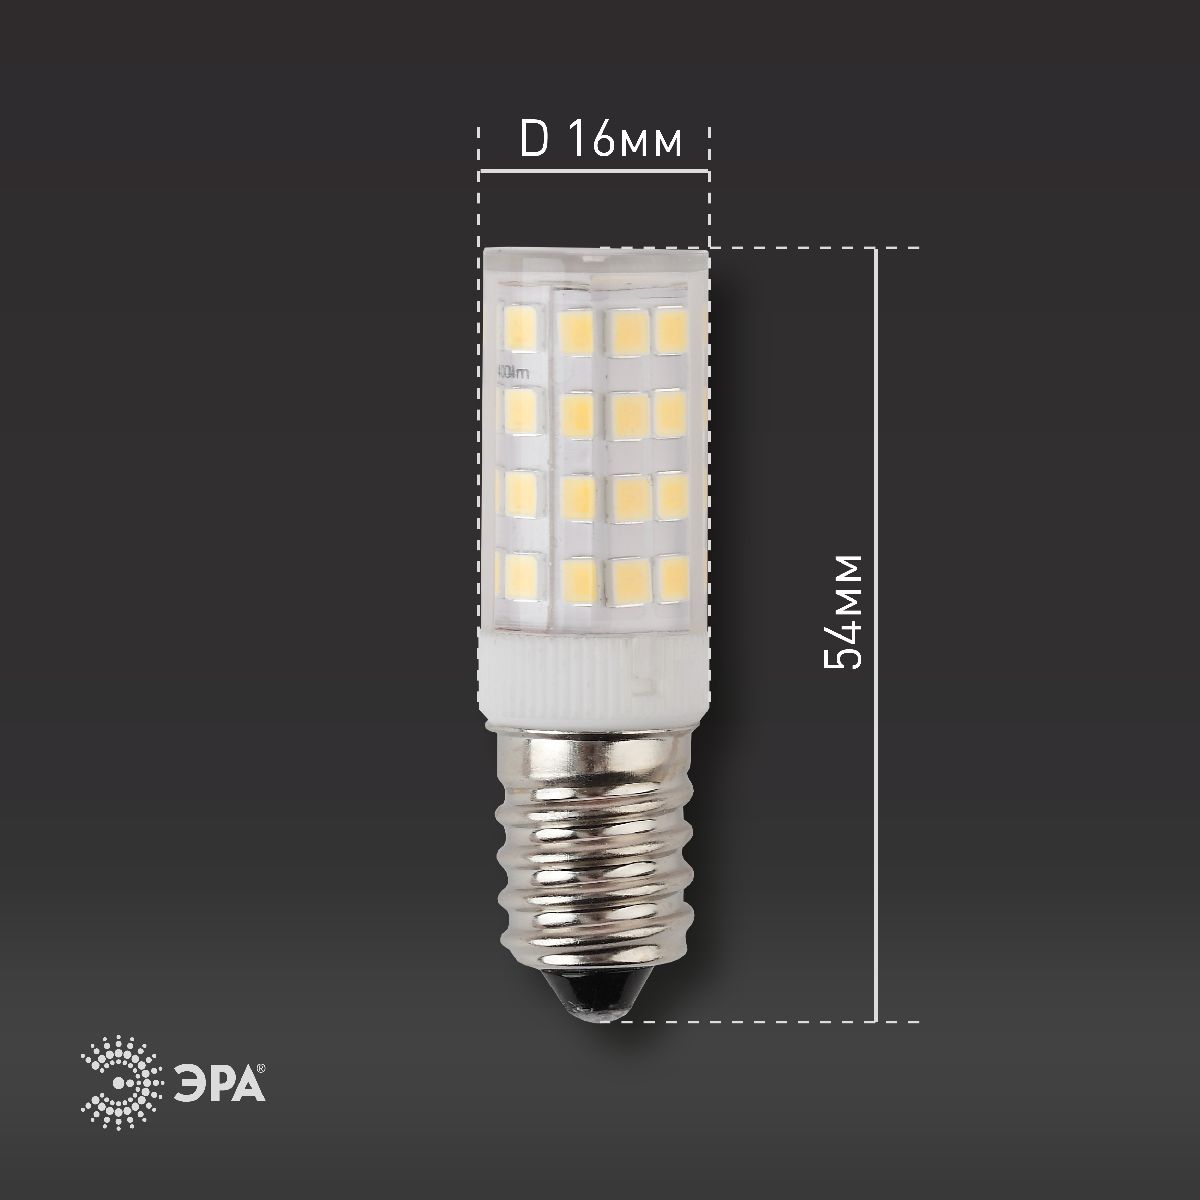 Лампа светодиодная Эра E14 5W 2700K LED T25-5W-CORN-827-E14 Б0033030